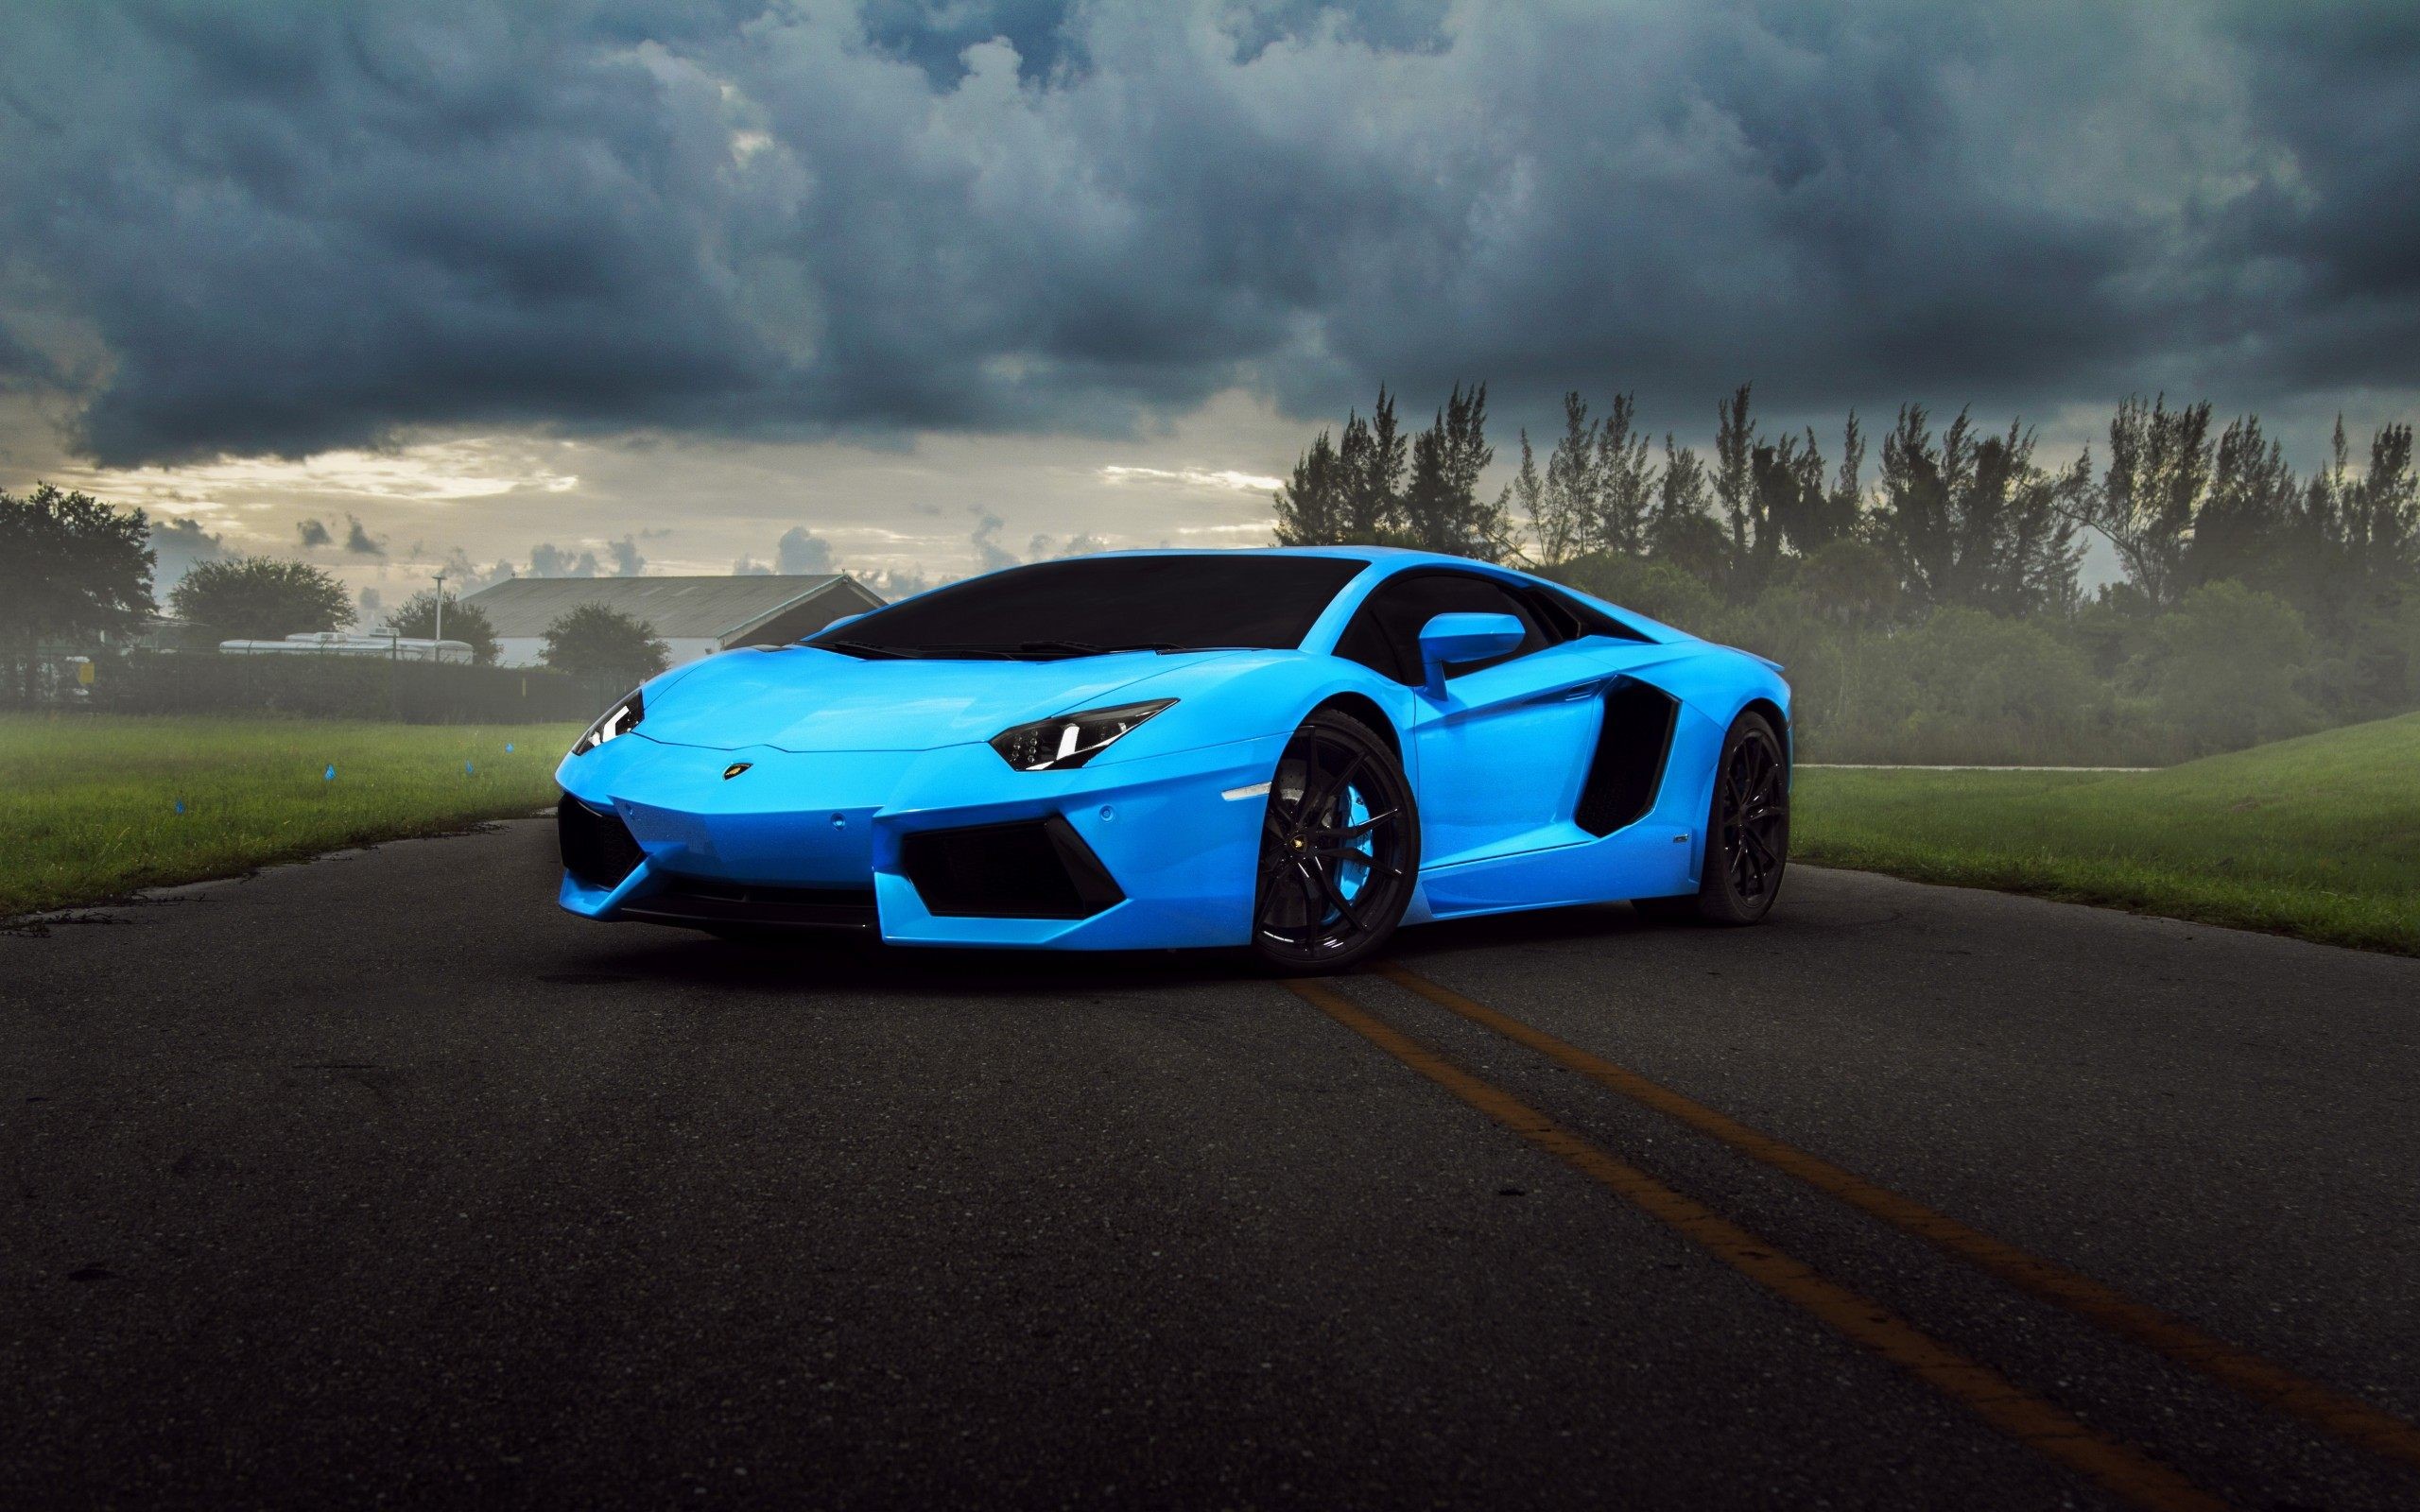 Làm mới màn hình của bạn với những hình nền siêu xe Lamborghini ấn tượng và đầy tự hào. Hãy trải nghiệm cảm giác đam mê khi nhìn thấy những chiếc siêu xe này.